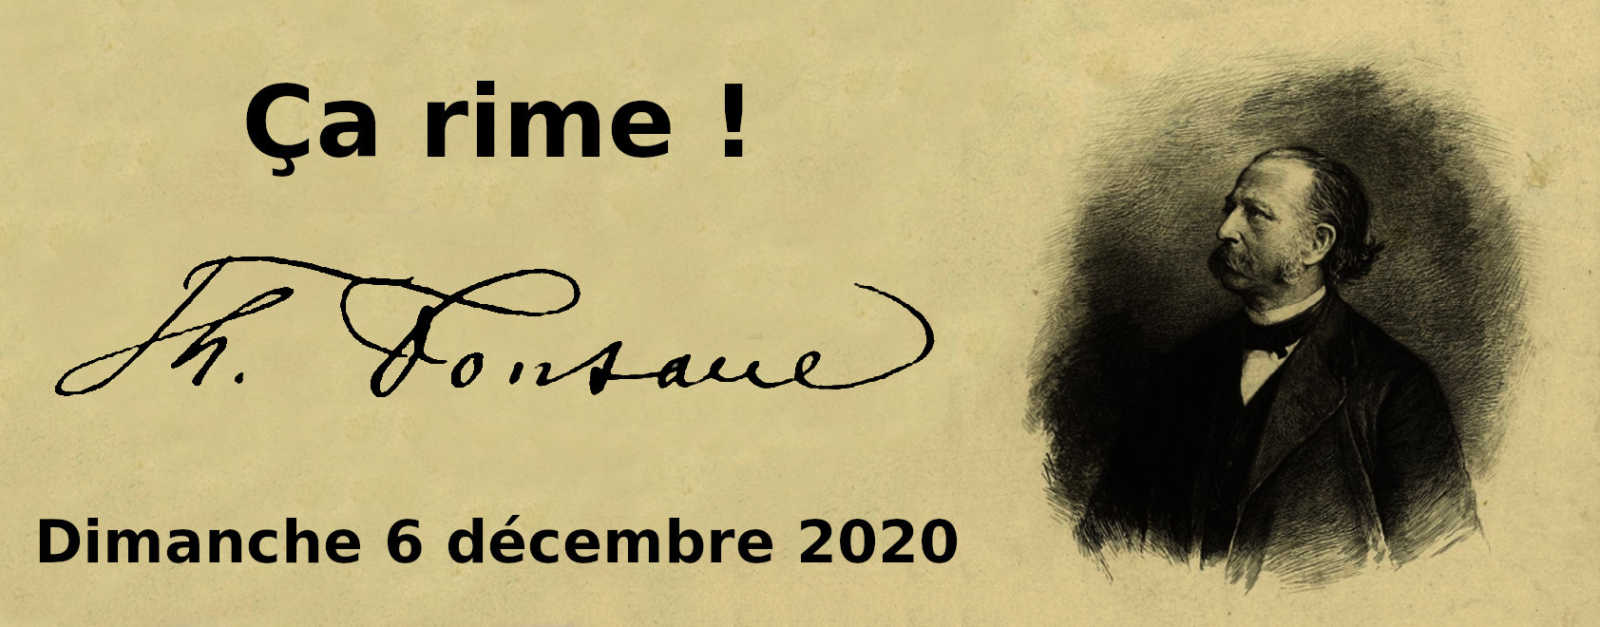 Dimanche 6 décembre 2020 à 11h : Troisième rencontre Ça rime ! – Fontane